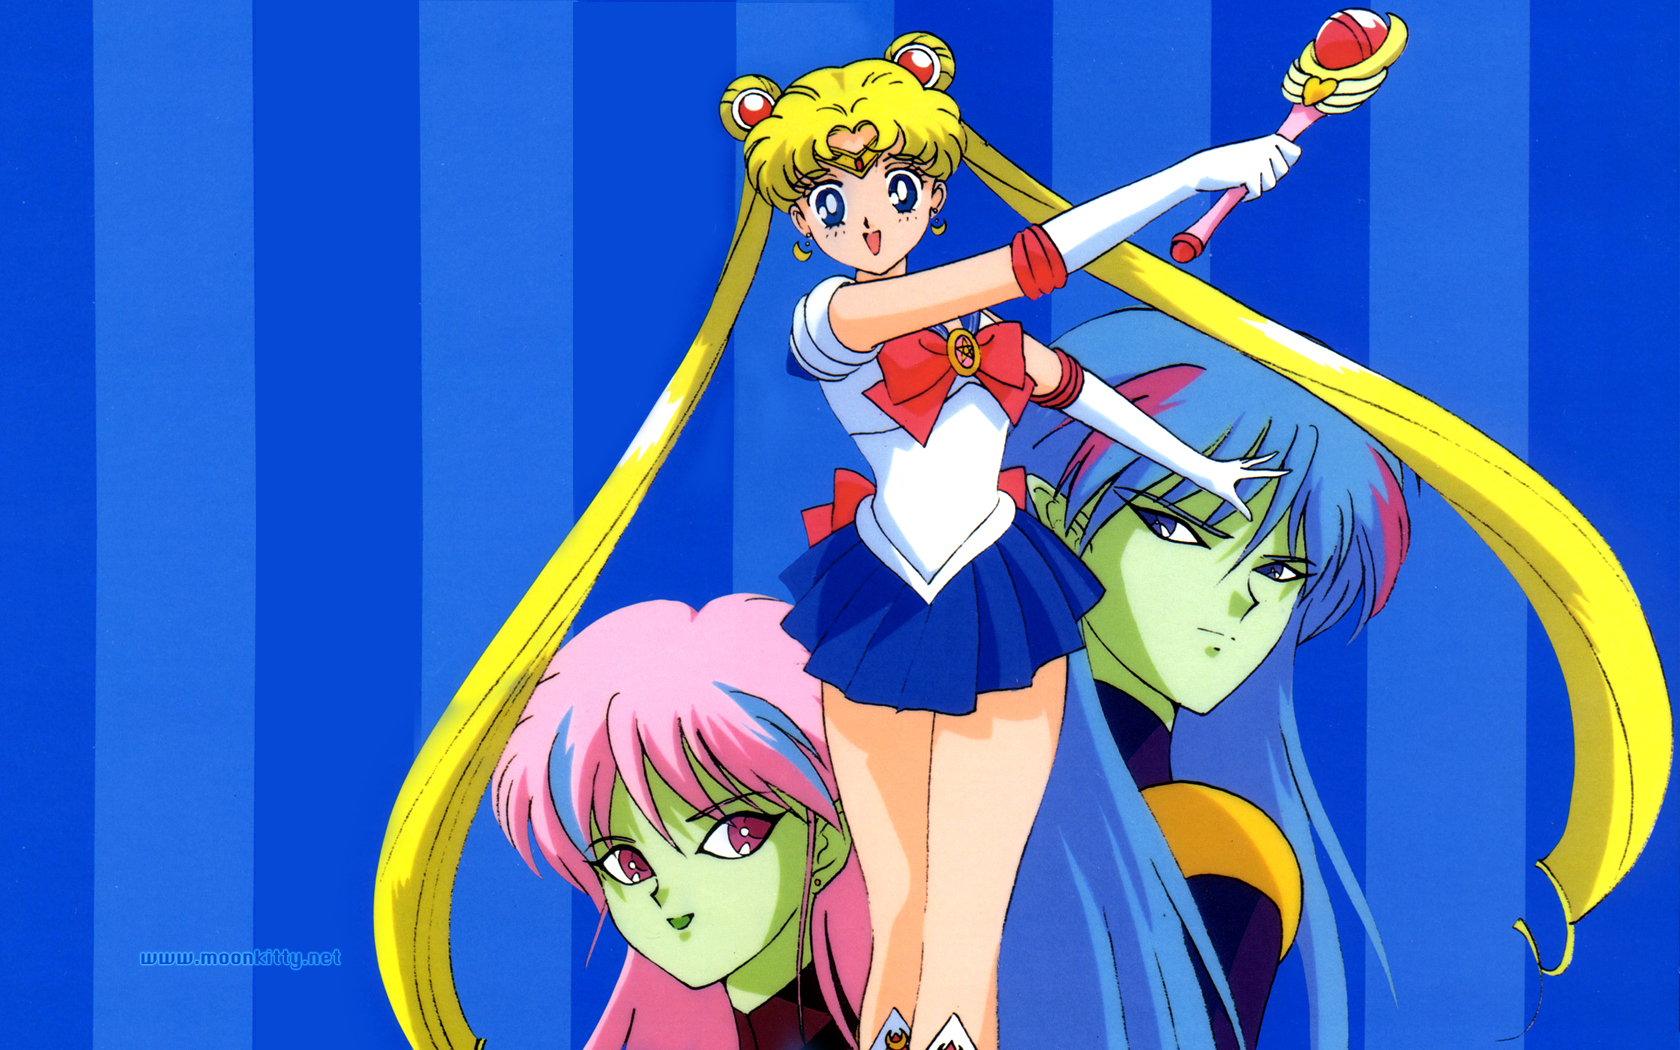 Sailor Moon セーラームーン 壁紙 ファンポップ